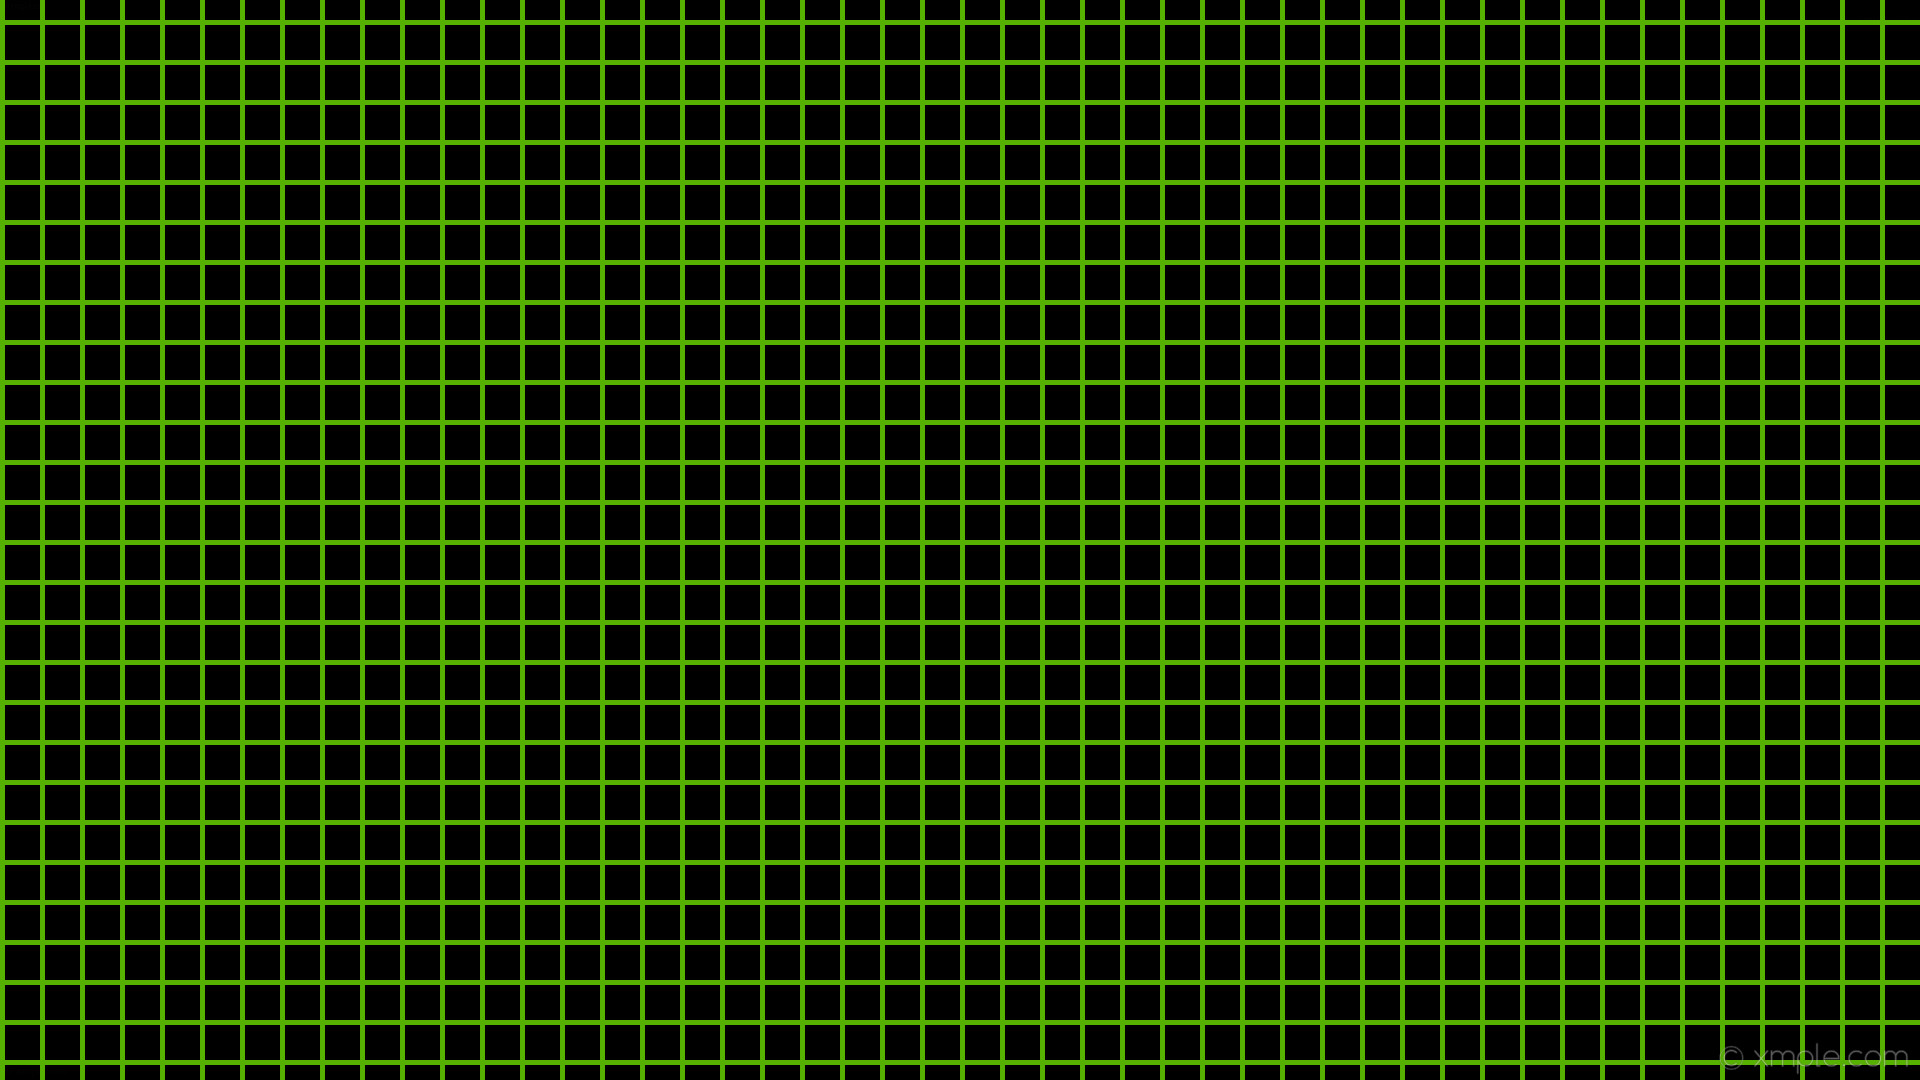 1920x1080 wallpaper graph paper green black grid lawn green #000000 #7cfc00 0Â° 5px  40px